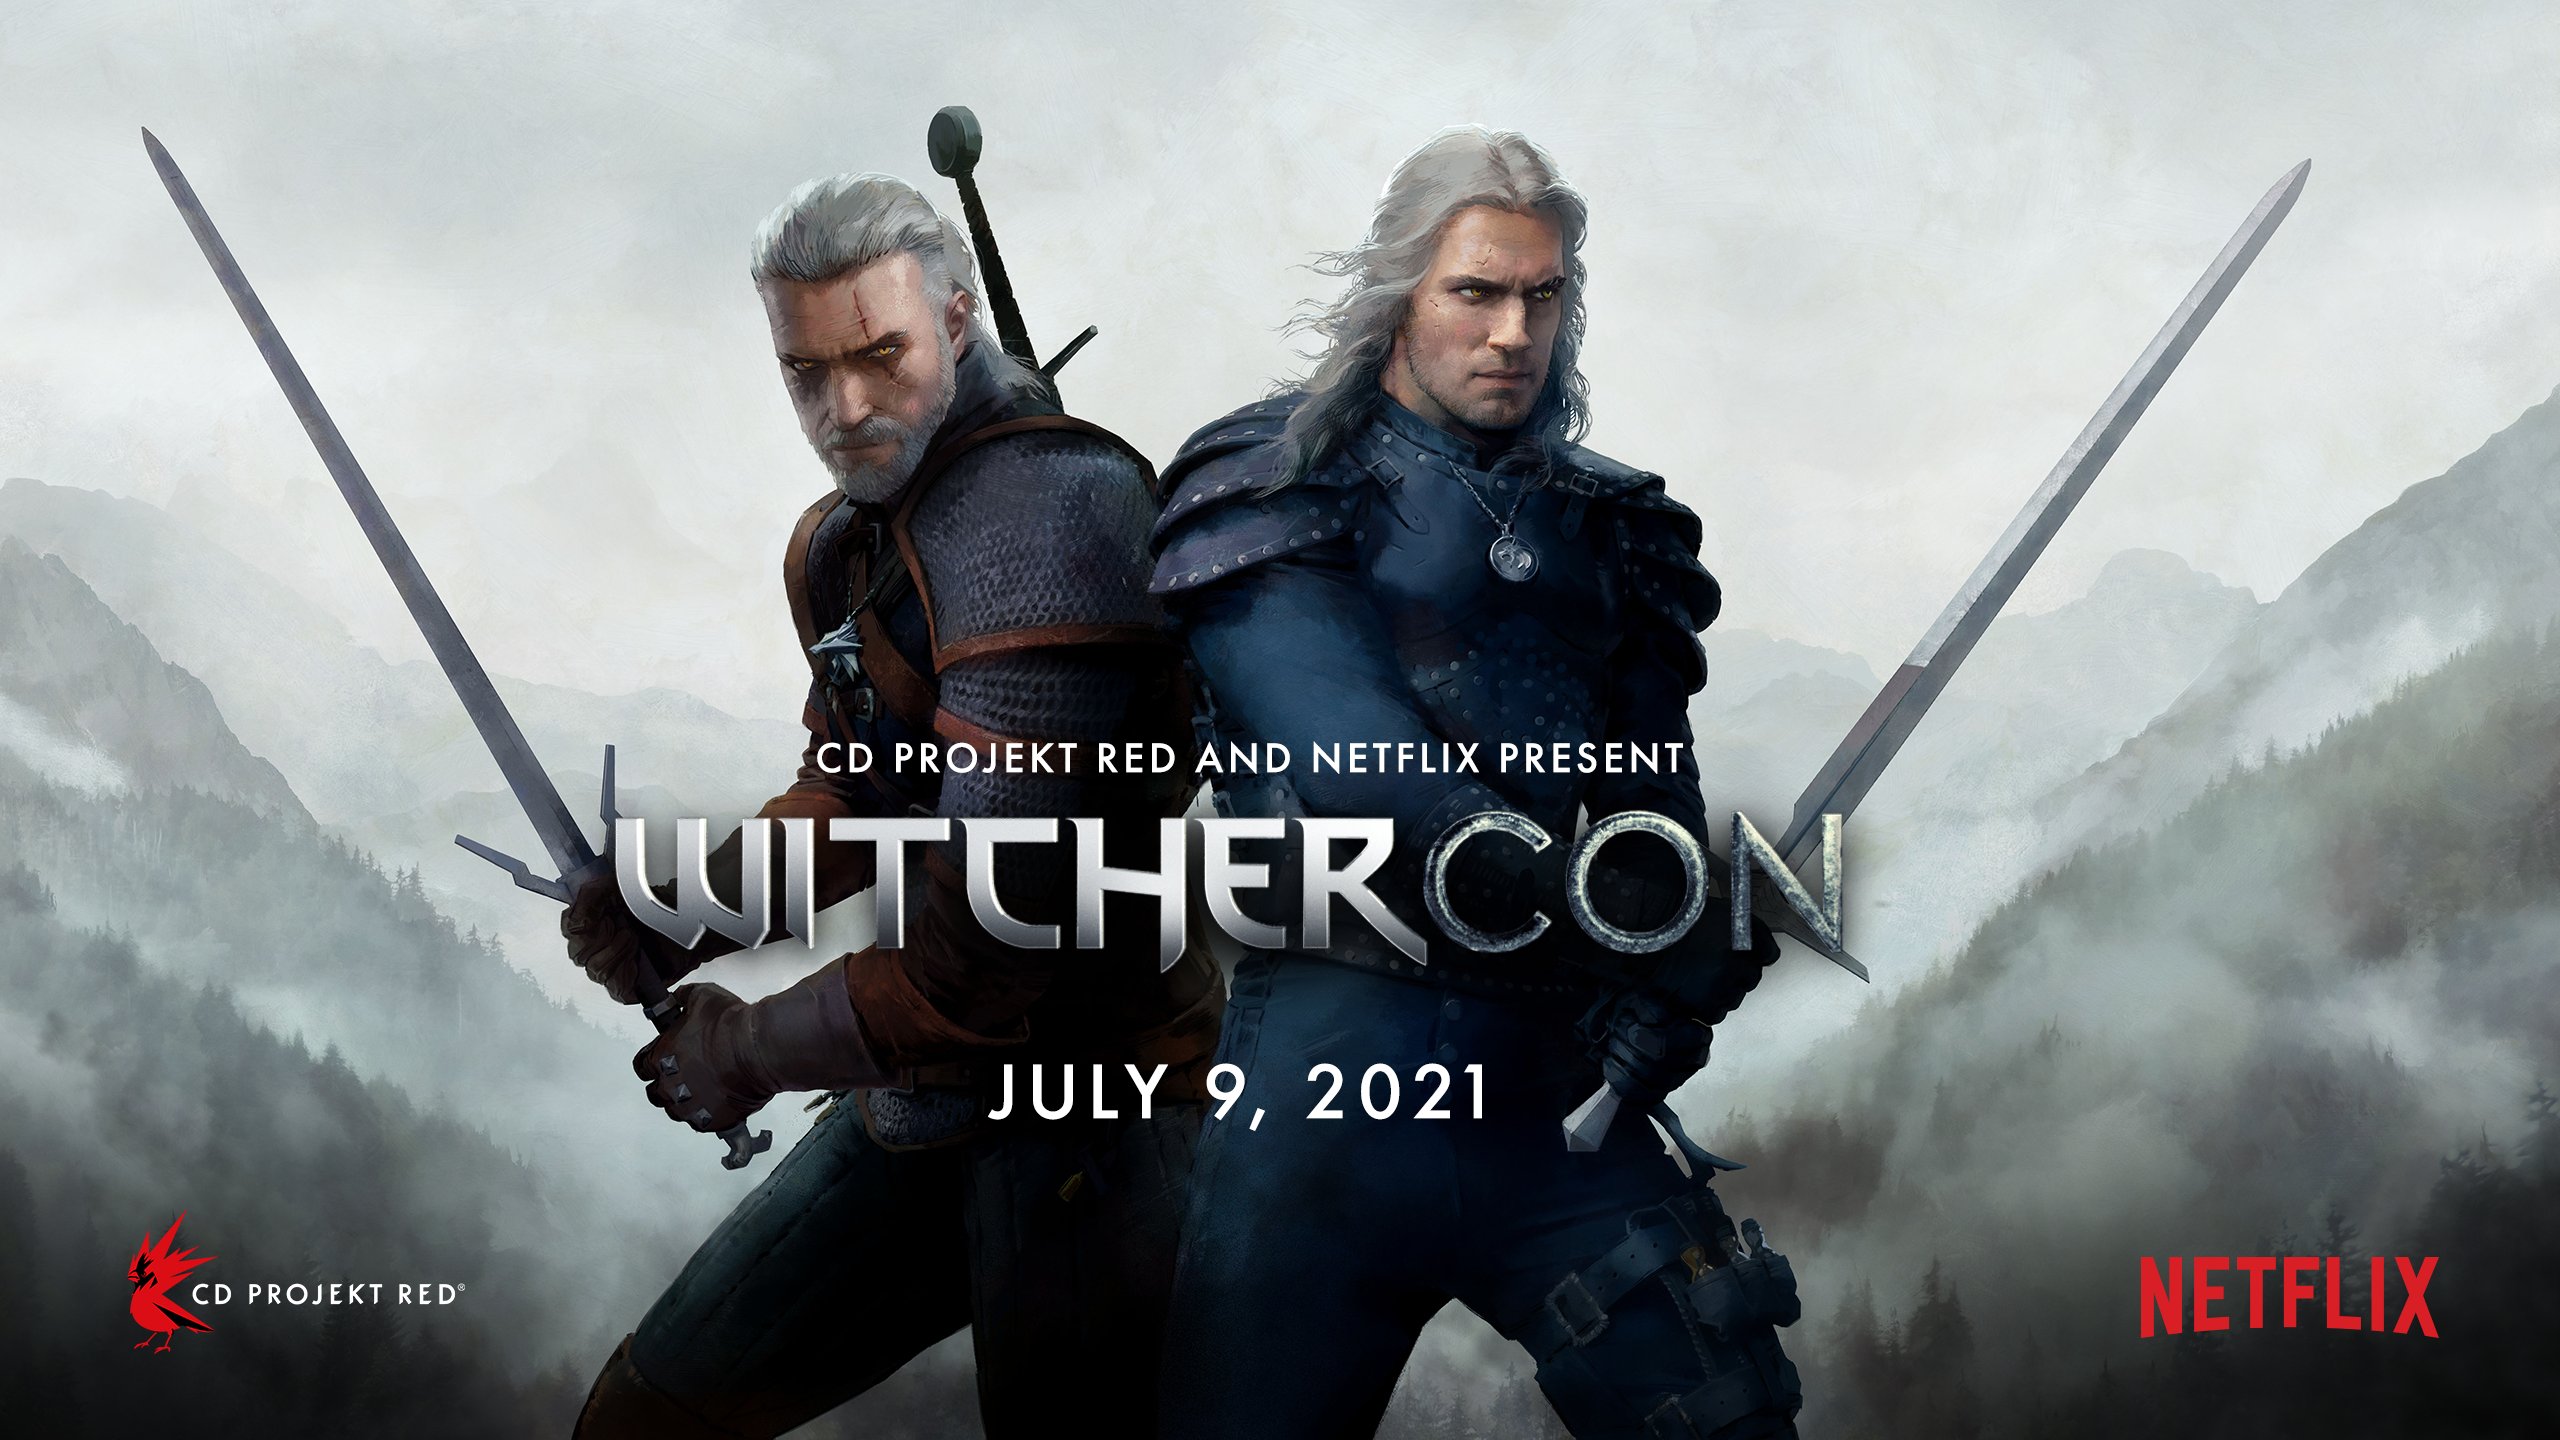 CD Projekt RED et Netflix annoncent une WitcherCon pour le 9 juillet